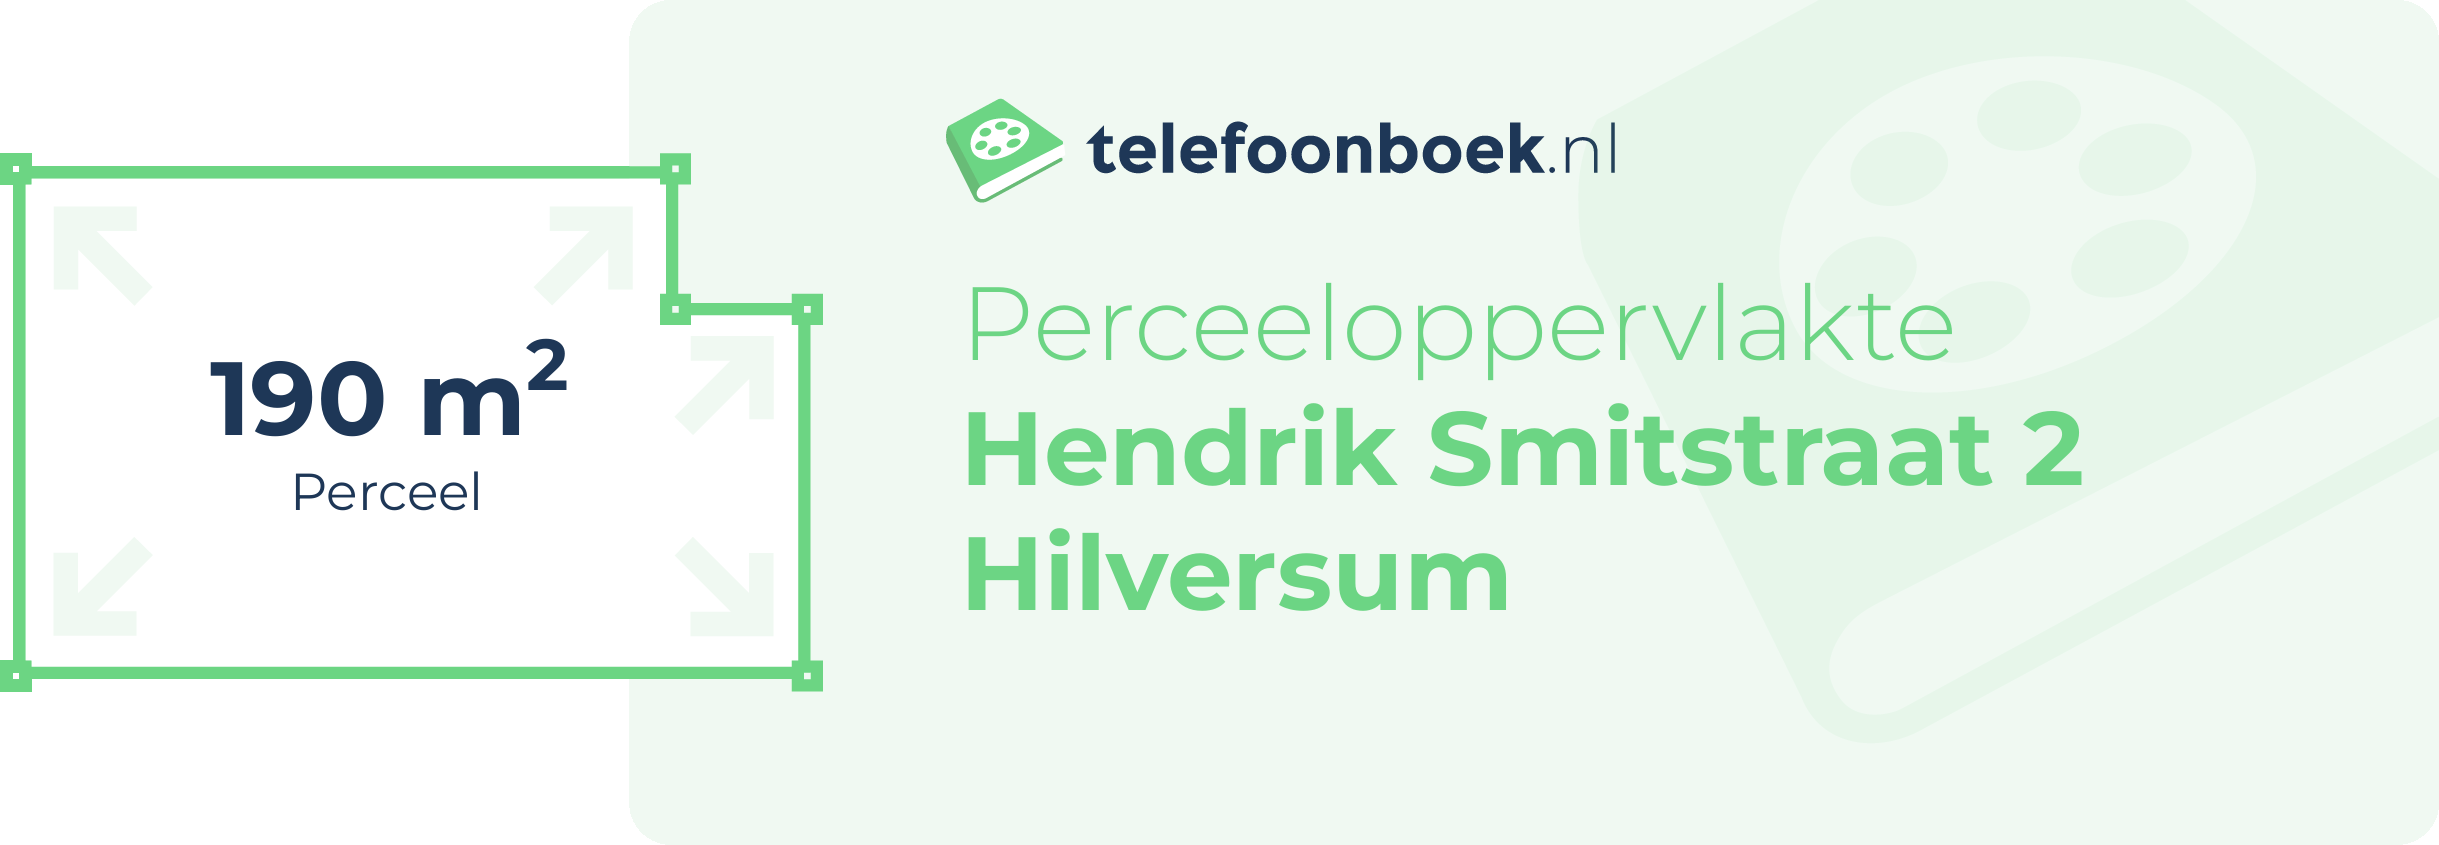 Perceeloppervlakte Hendrik Smitstraat 2 Hilversum